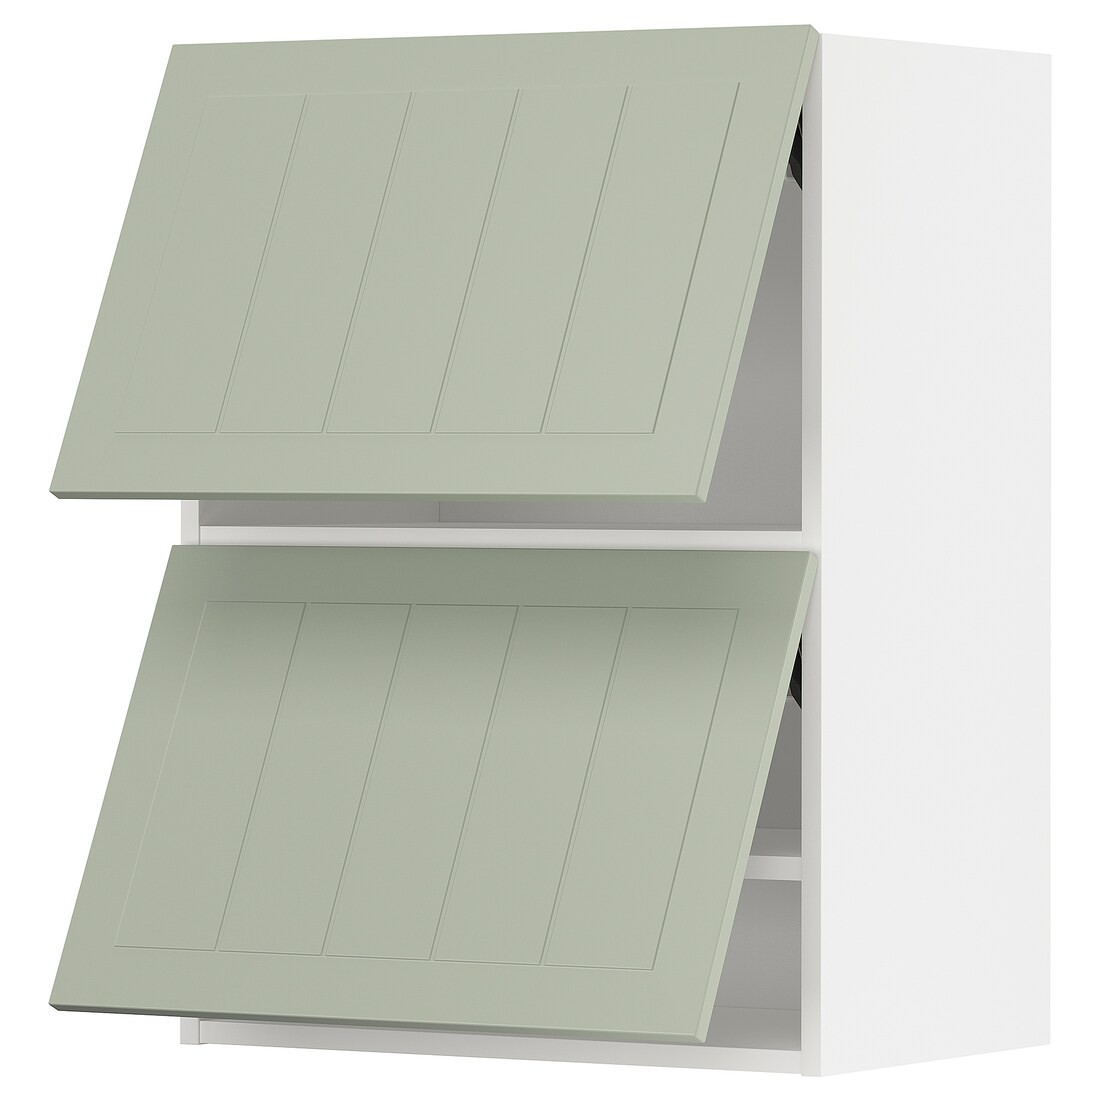 METOD МЕТОД Навесной горизонтальный шкаф / 2двери, нажимной механизм, белый / Stensund светло-зеленый, 60x80 см